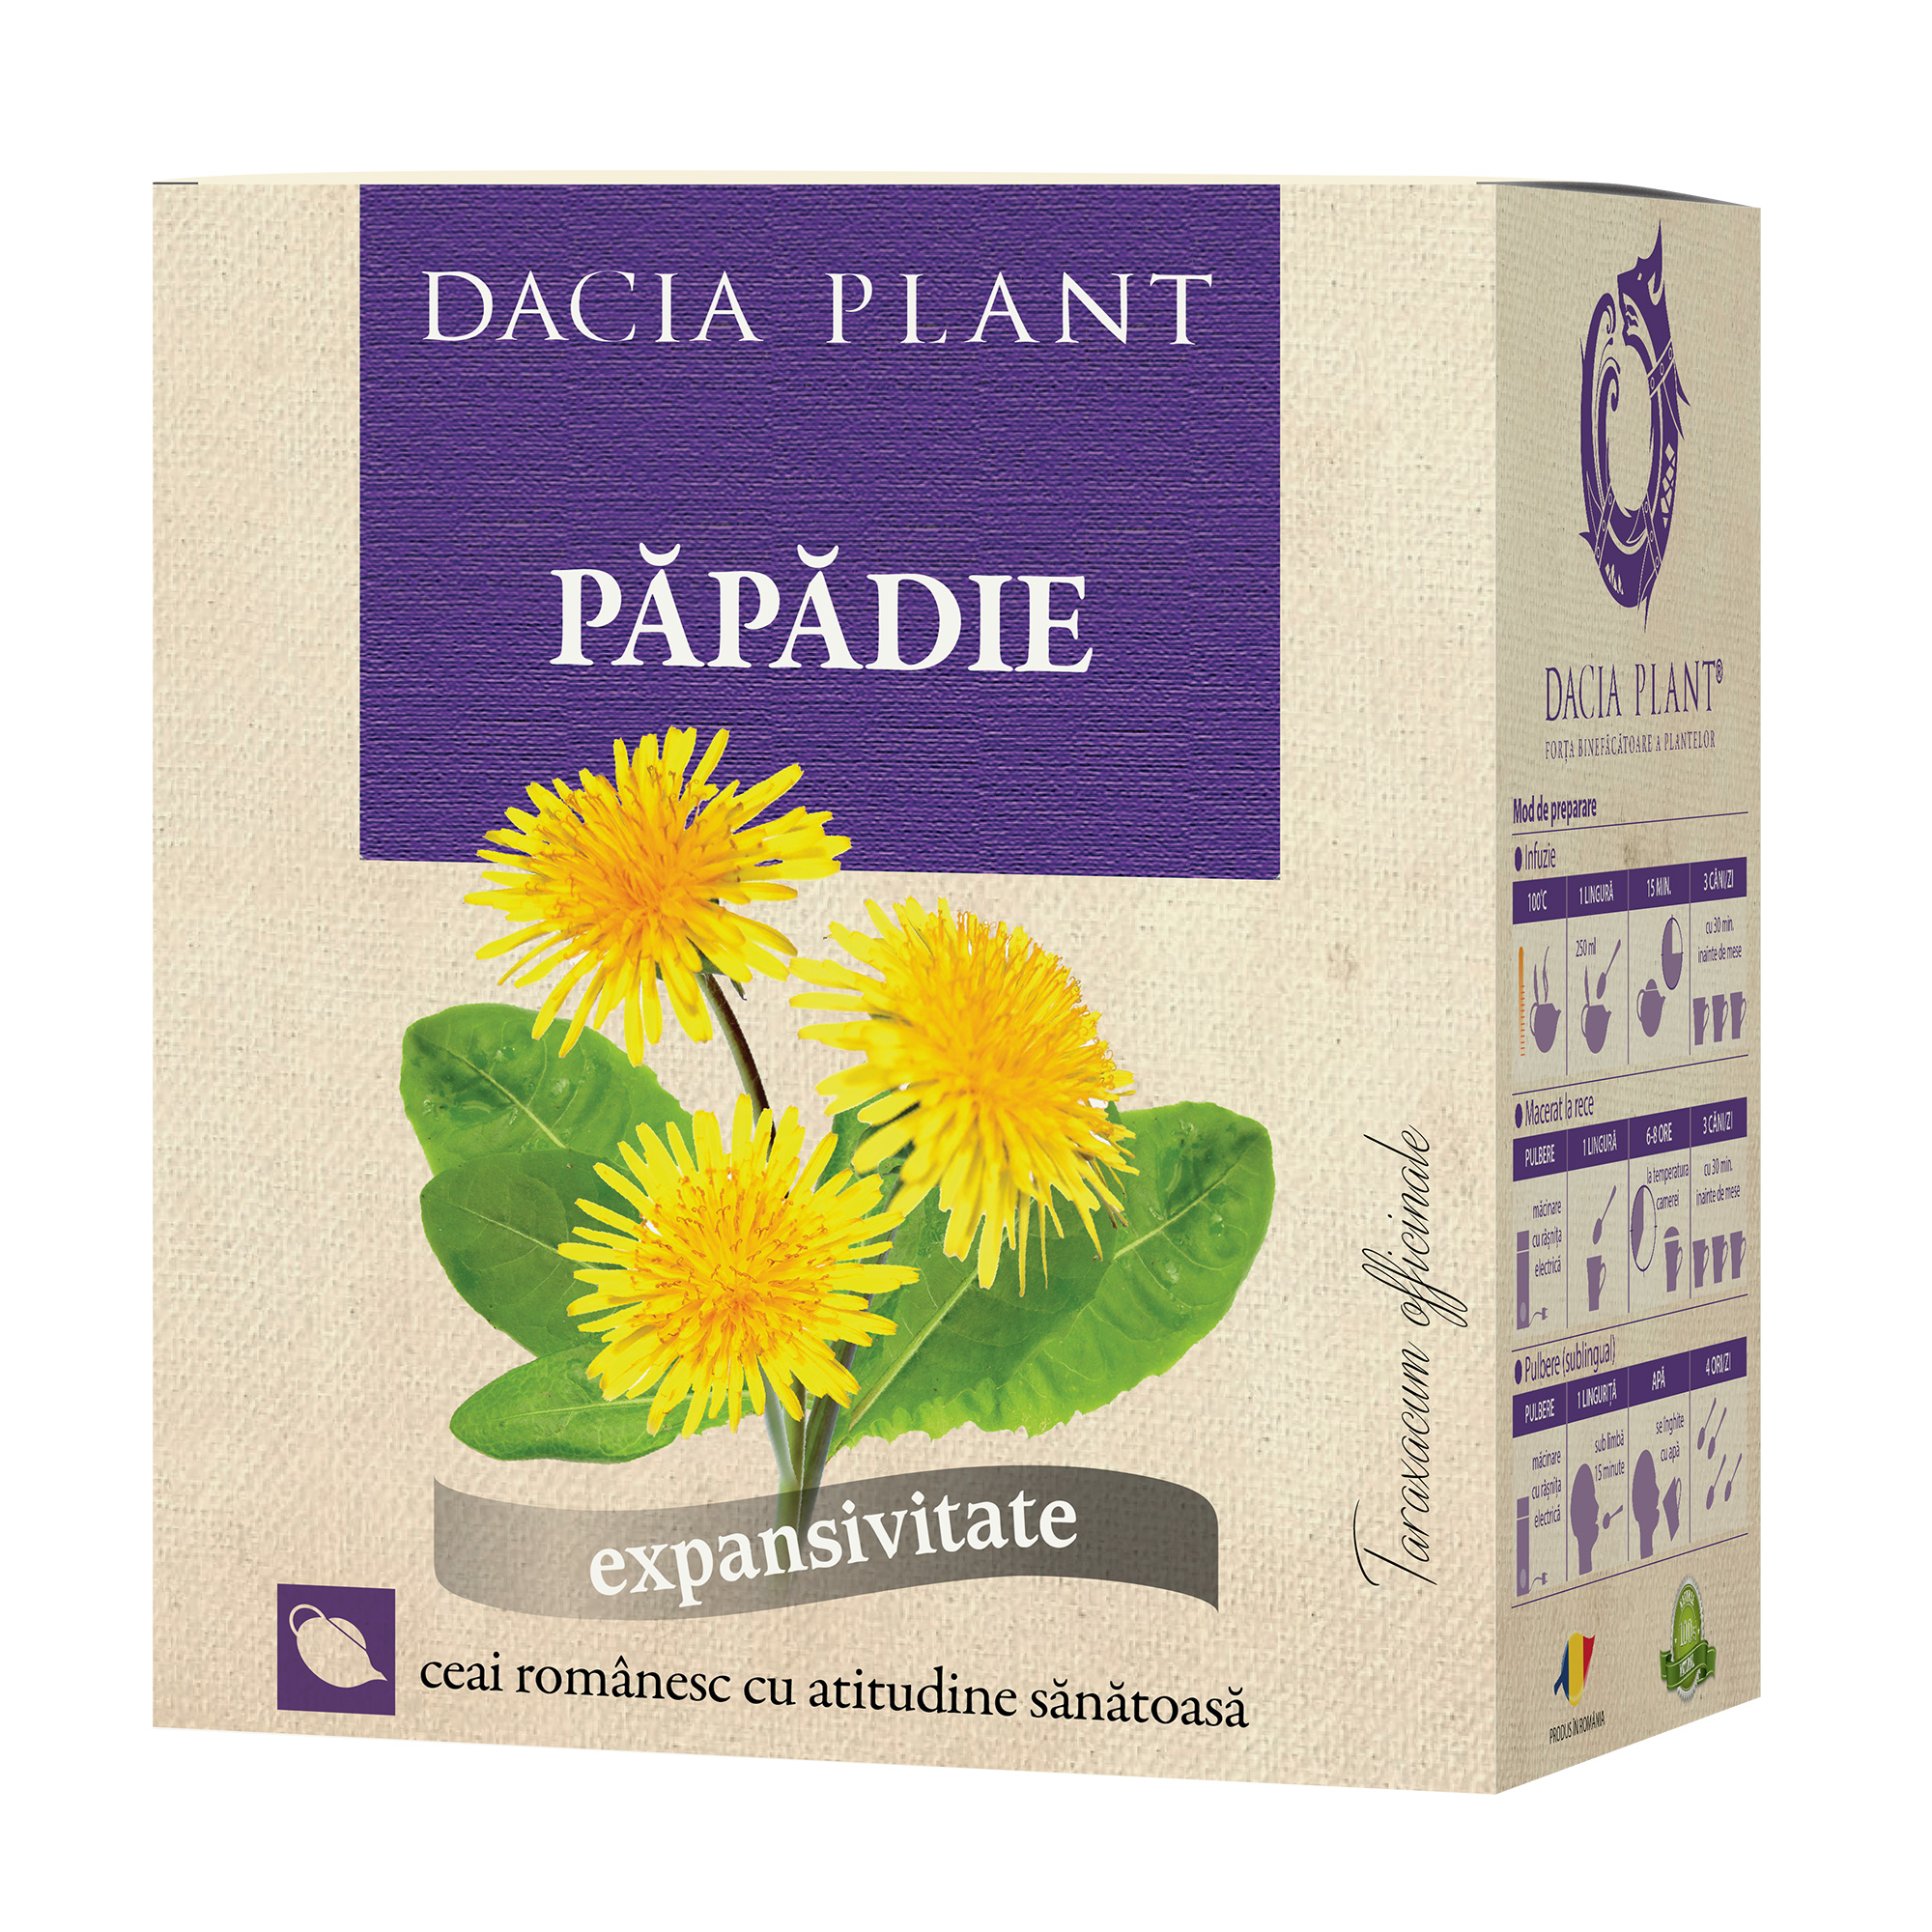 Ceai Papadie Dacia Plant